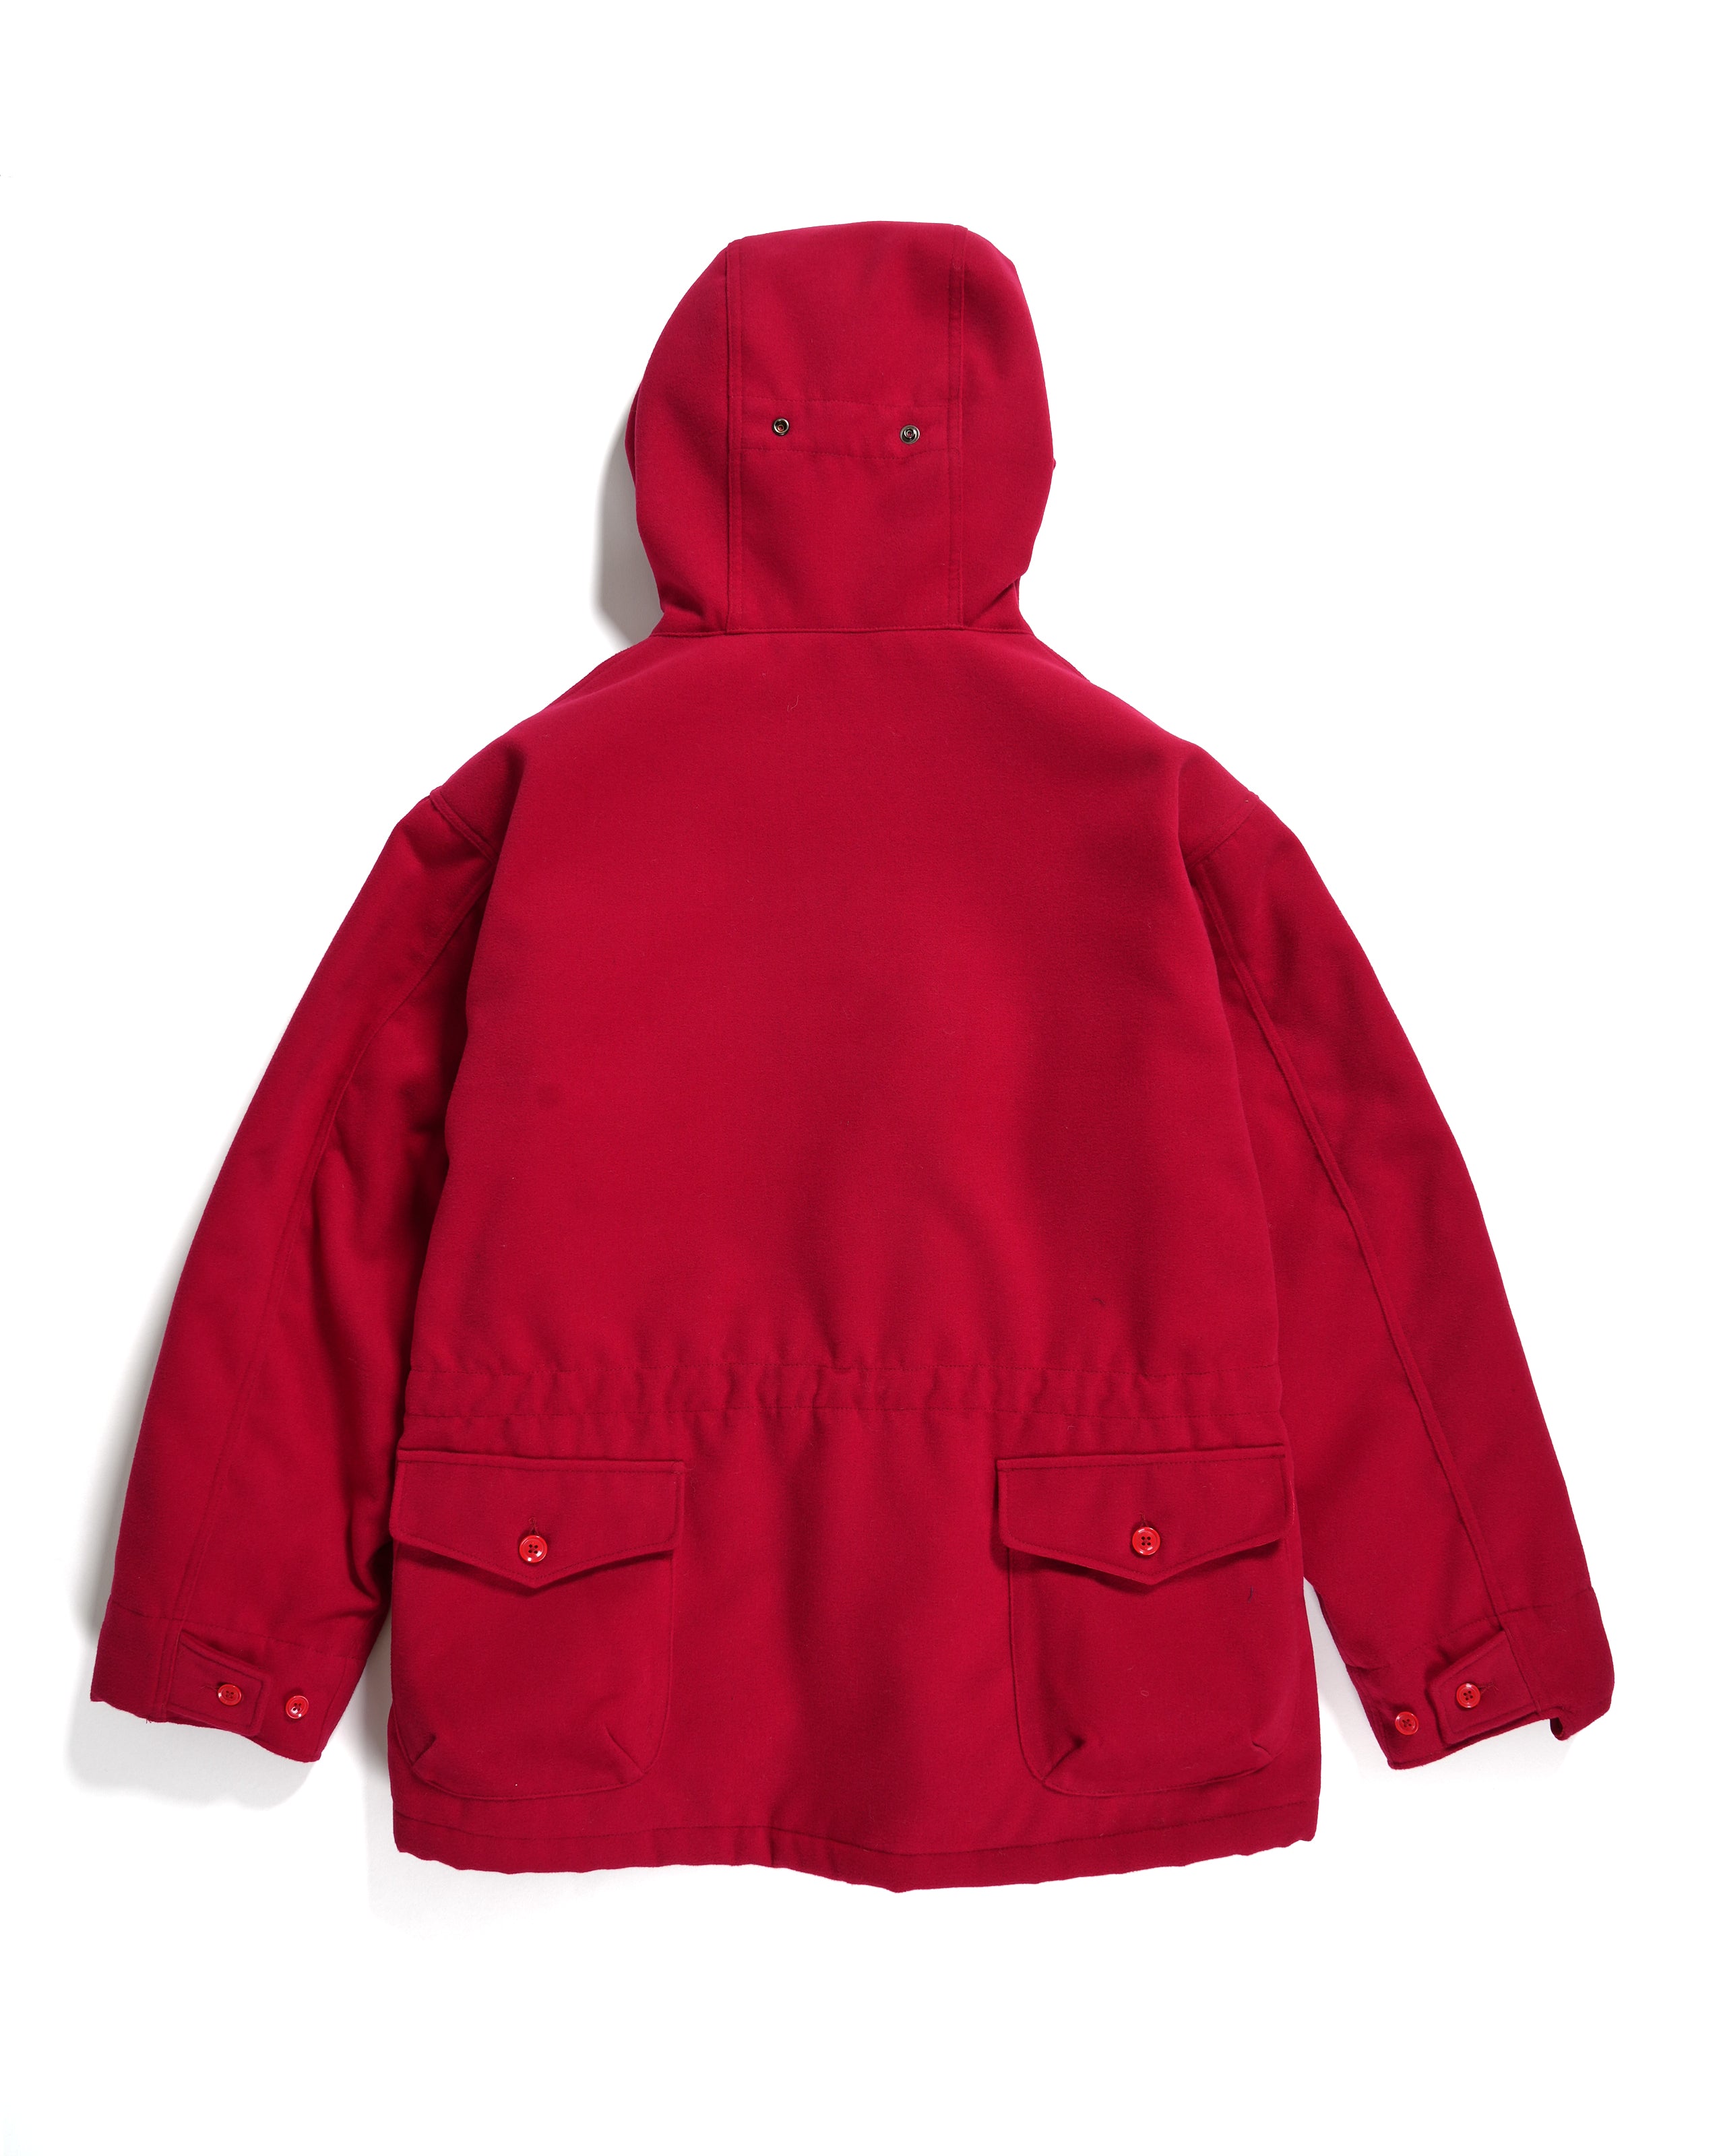 SAS Jacket - Red Polyester Fake Melton